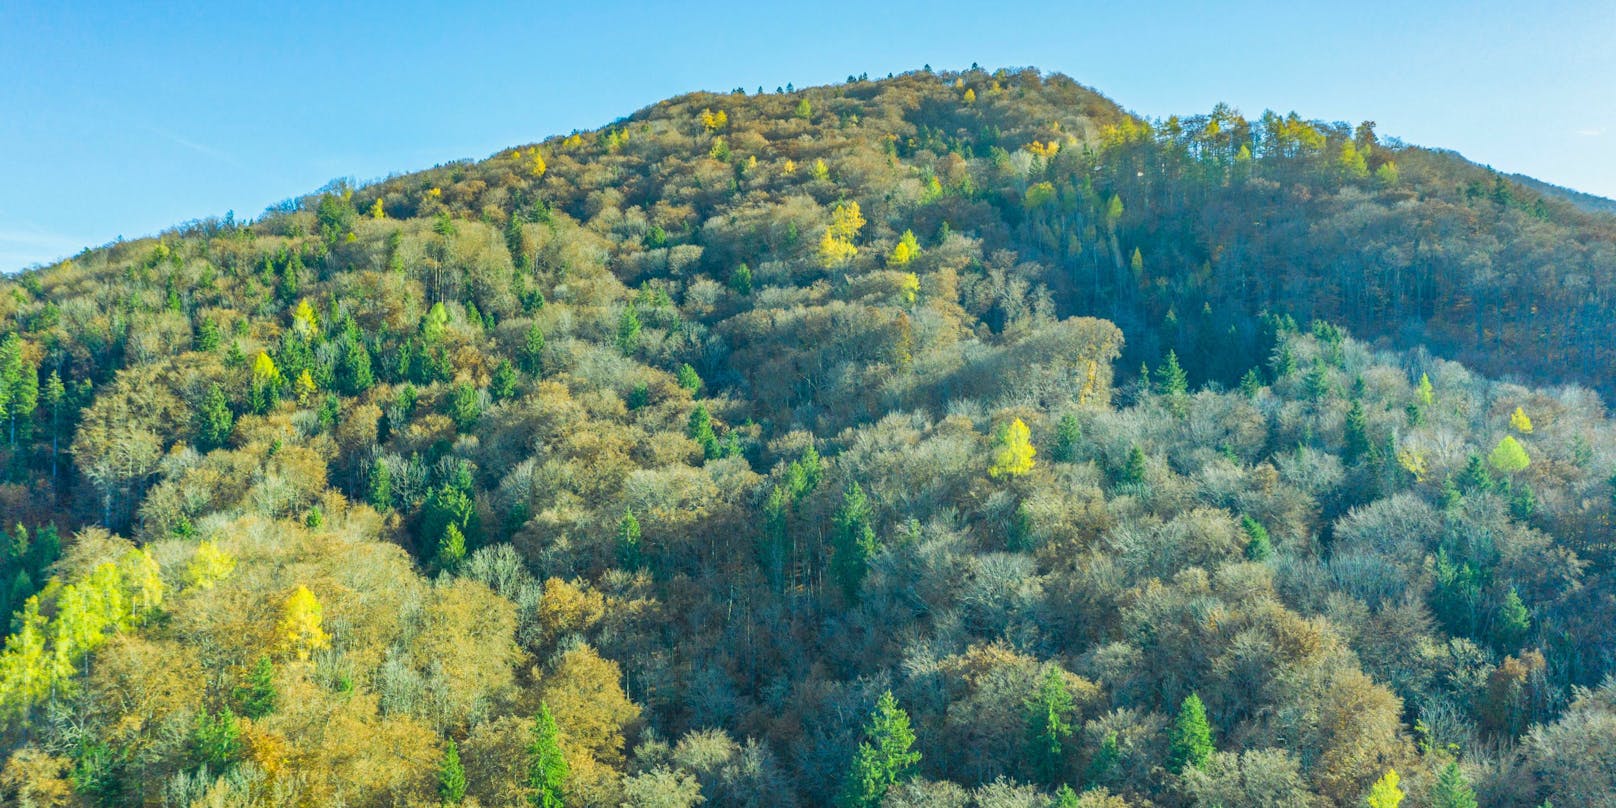 Österreich ist eines der grünsten Länder der Welt (im Bild: Bergwald über dem Ortszentrum von Elsbethen (Salzburg)).